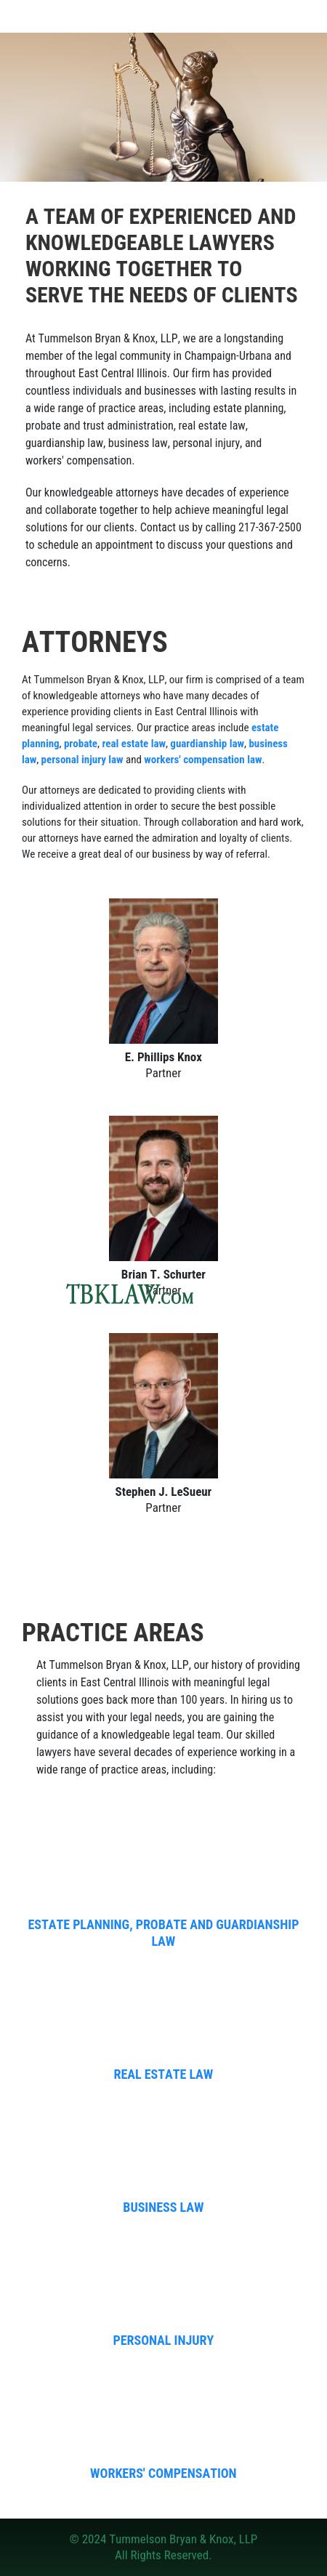 Tummelson, Bryan & Knox, LLP - Urbana IL Lawyers